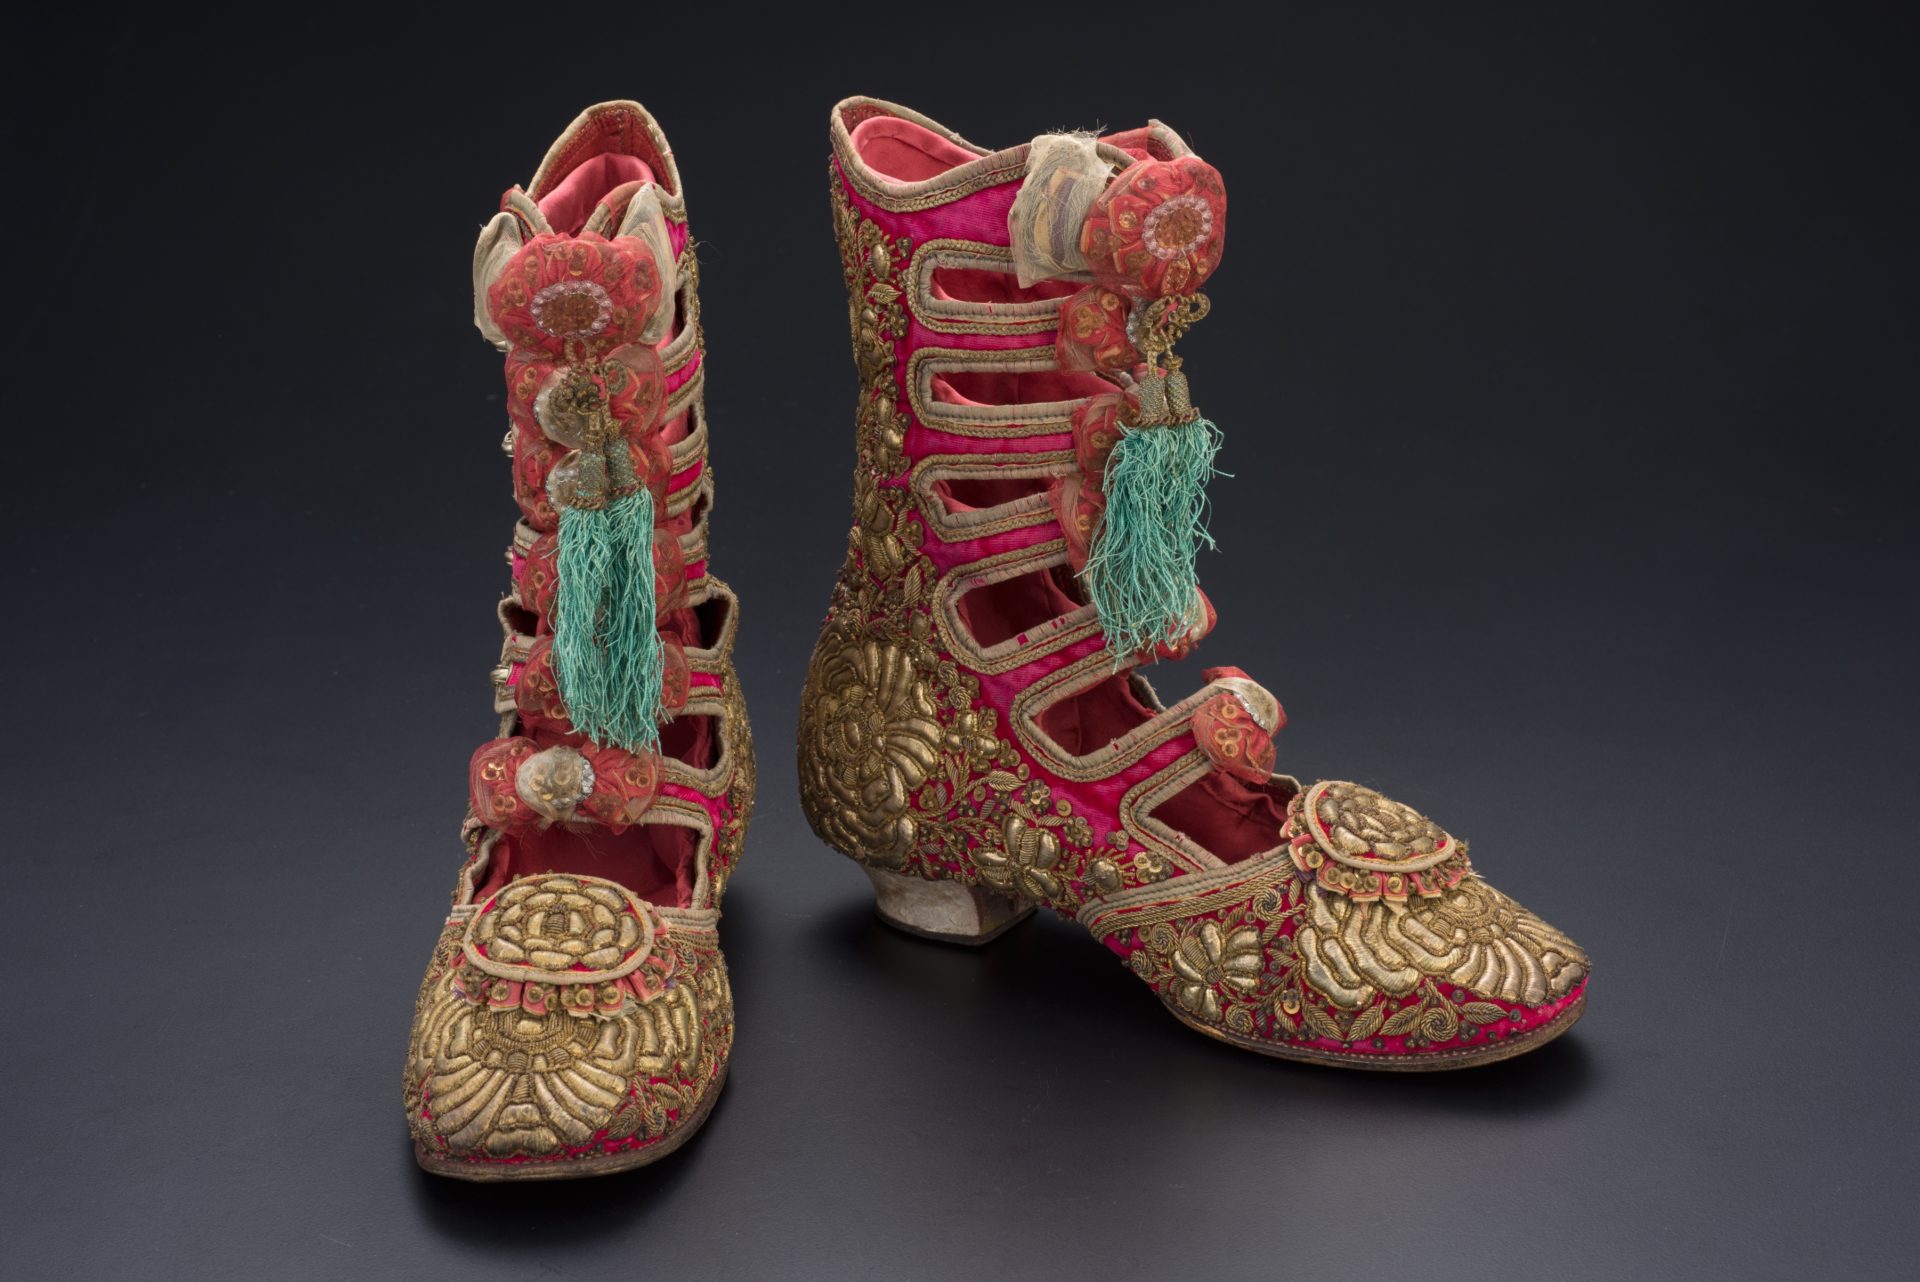 【亞太博物館連線專欄】娘惹珠飾及刺繡—文化轉譯的創意流動